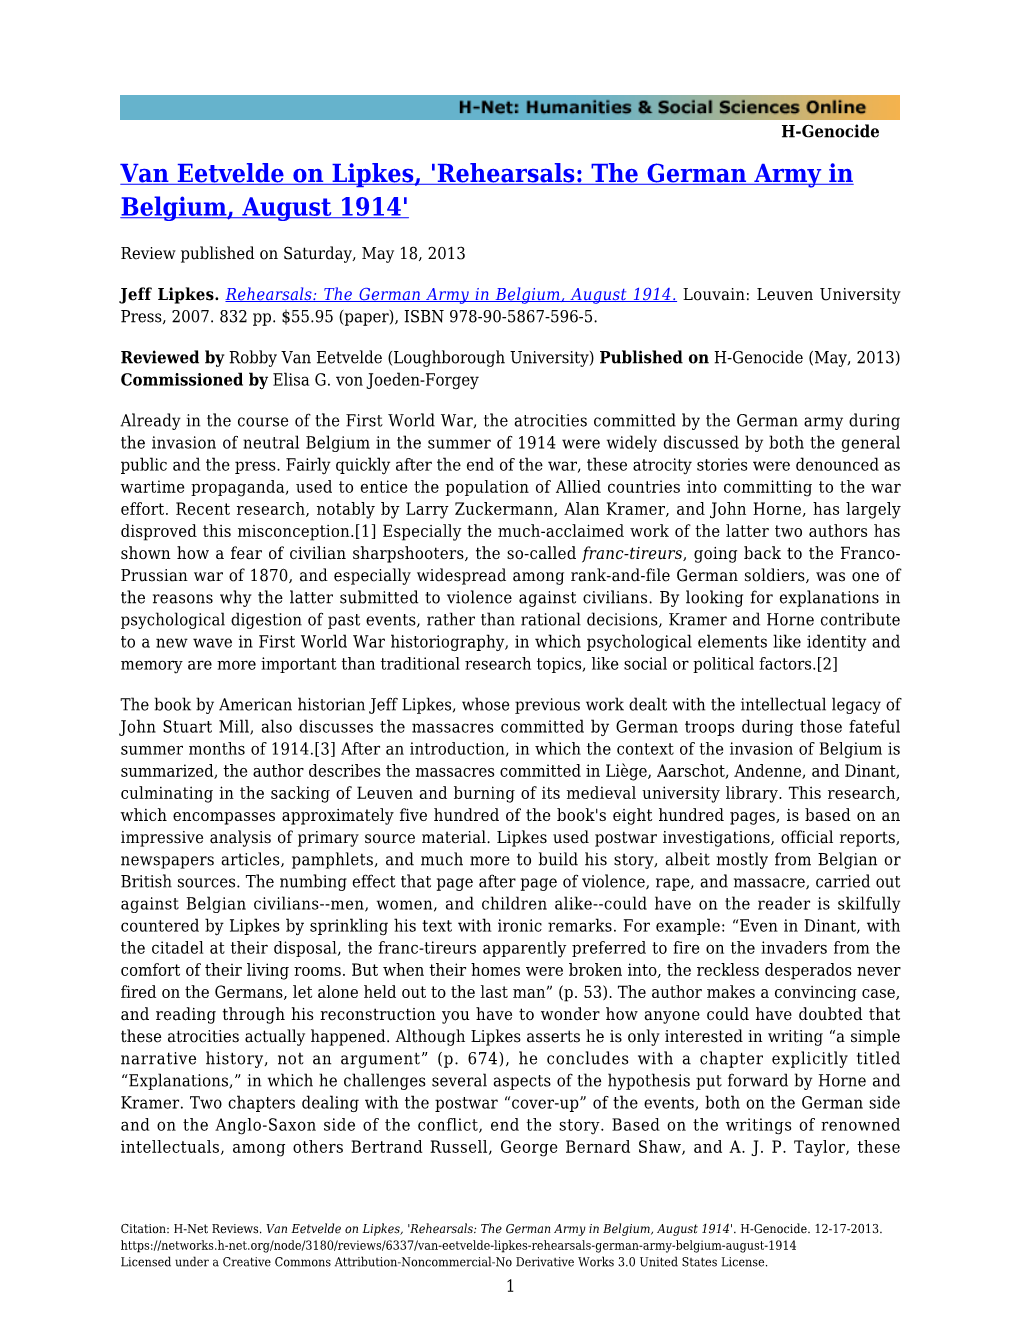 Van Eetvelde on Lipkes, 'Rehearsals: the German Army in Belgium, August 1914'